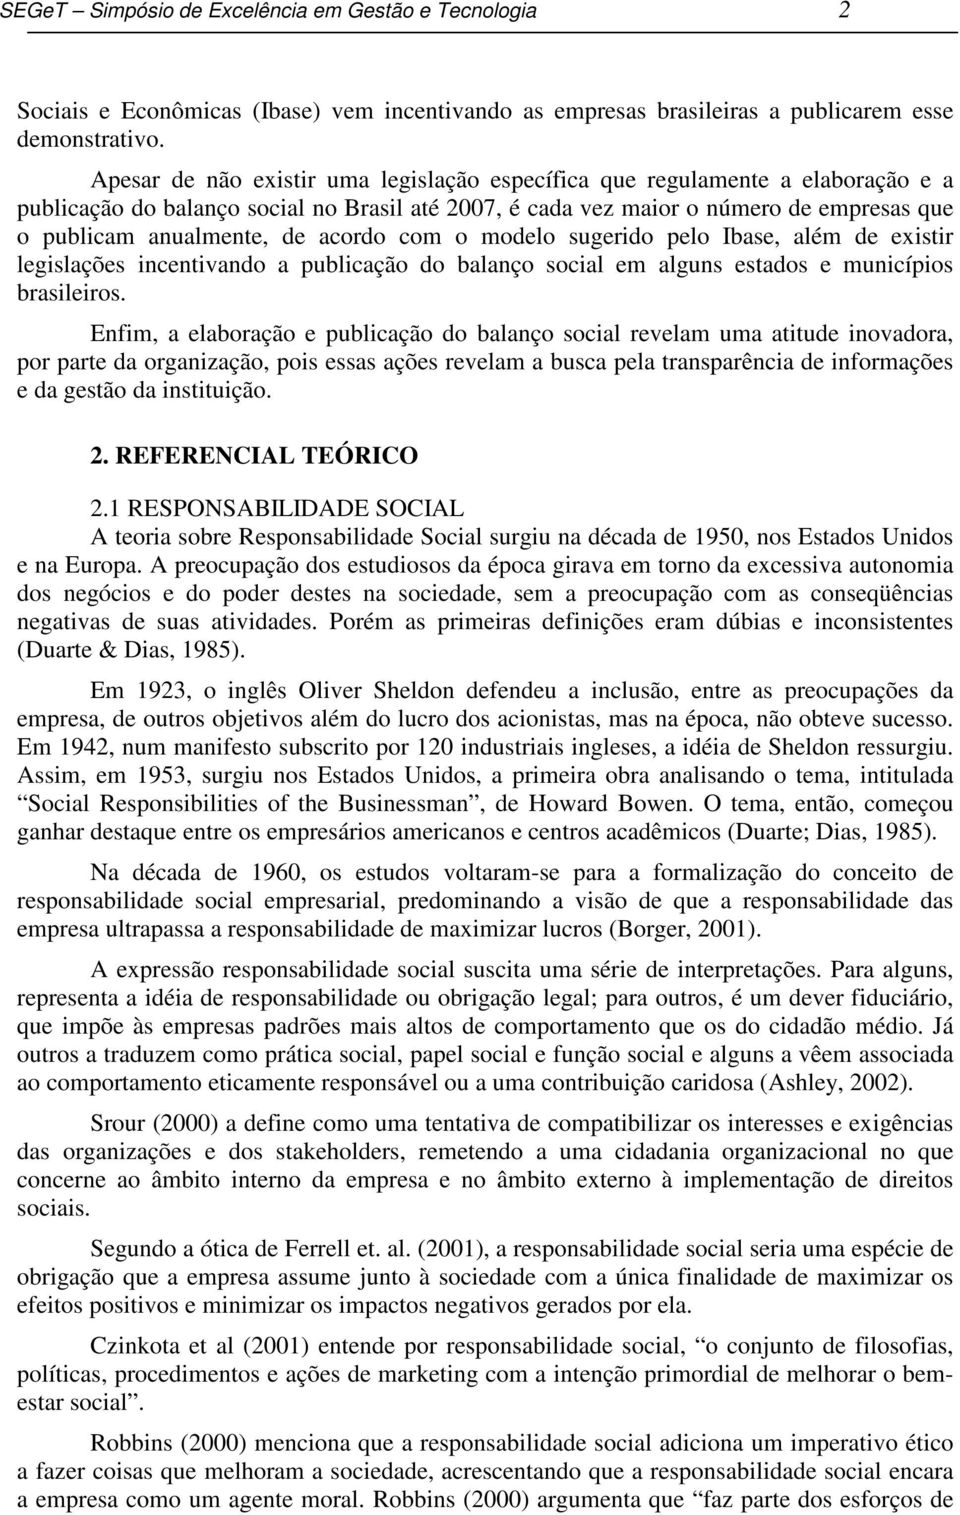 acordo com o modelo sugerido pelo Ibase, além de existir legislações incentivando a publicação do balanço social em alguns estados e municípios brasileiros.